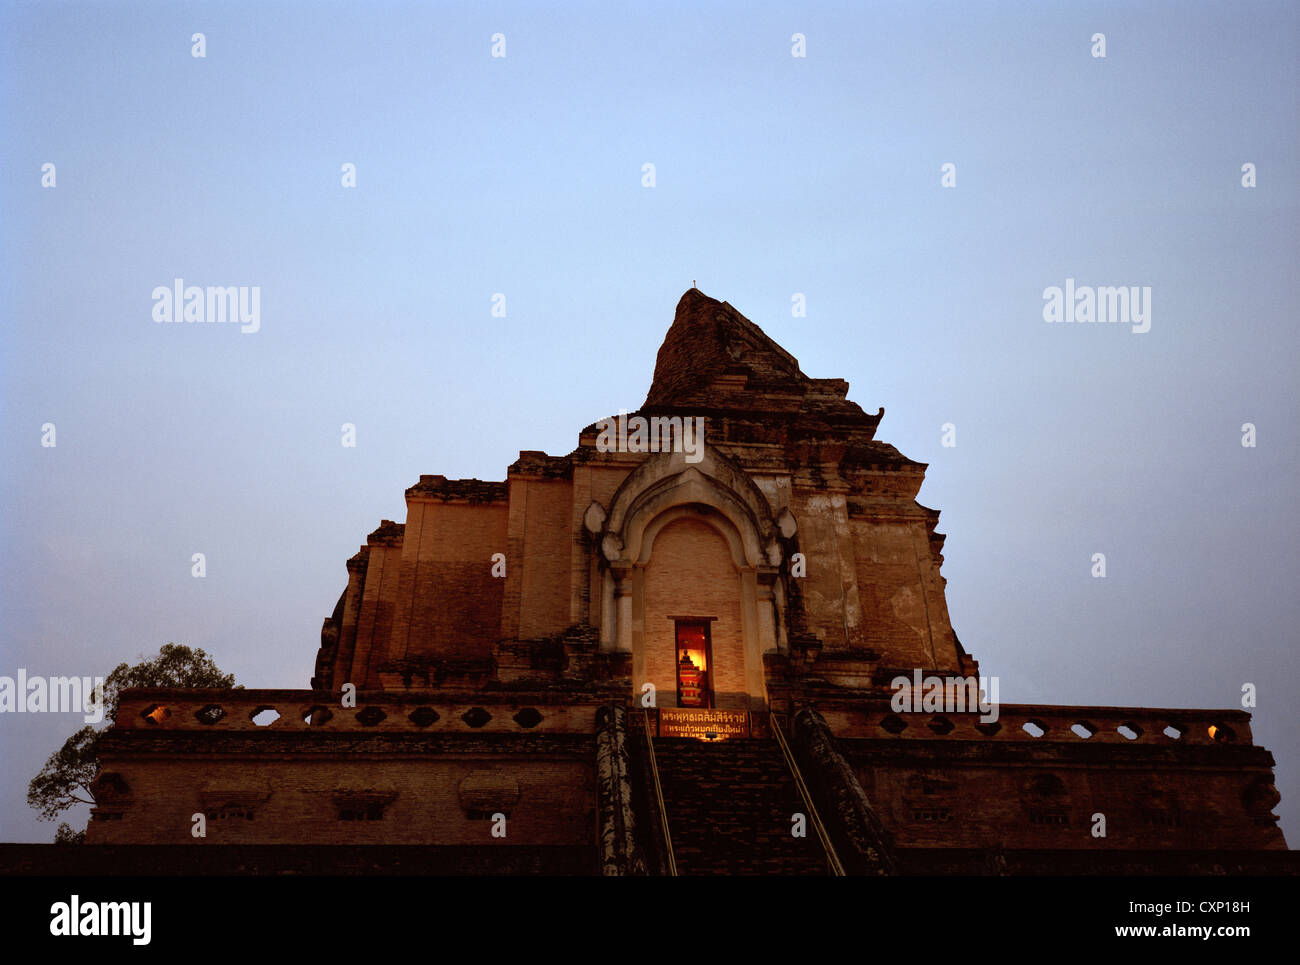 Wat Chedi Luang in Chiang Mai in Thailand in Fernost Südostasien. Buddhismus buddhistische Architektur Religion Geschichte historische Reisen Sonnenuntergang Nacht Stockfoto